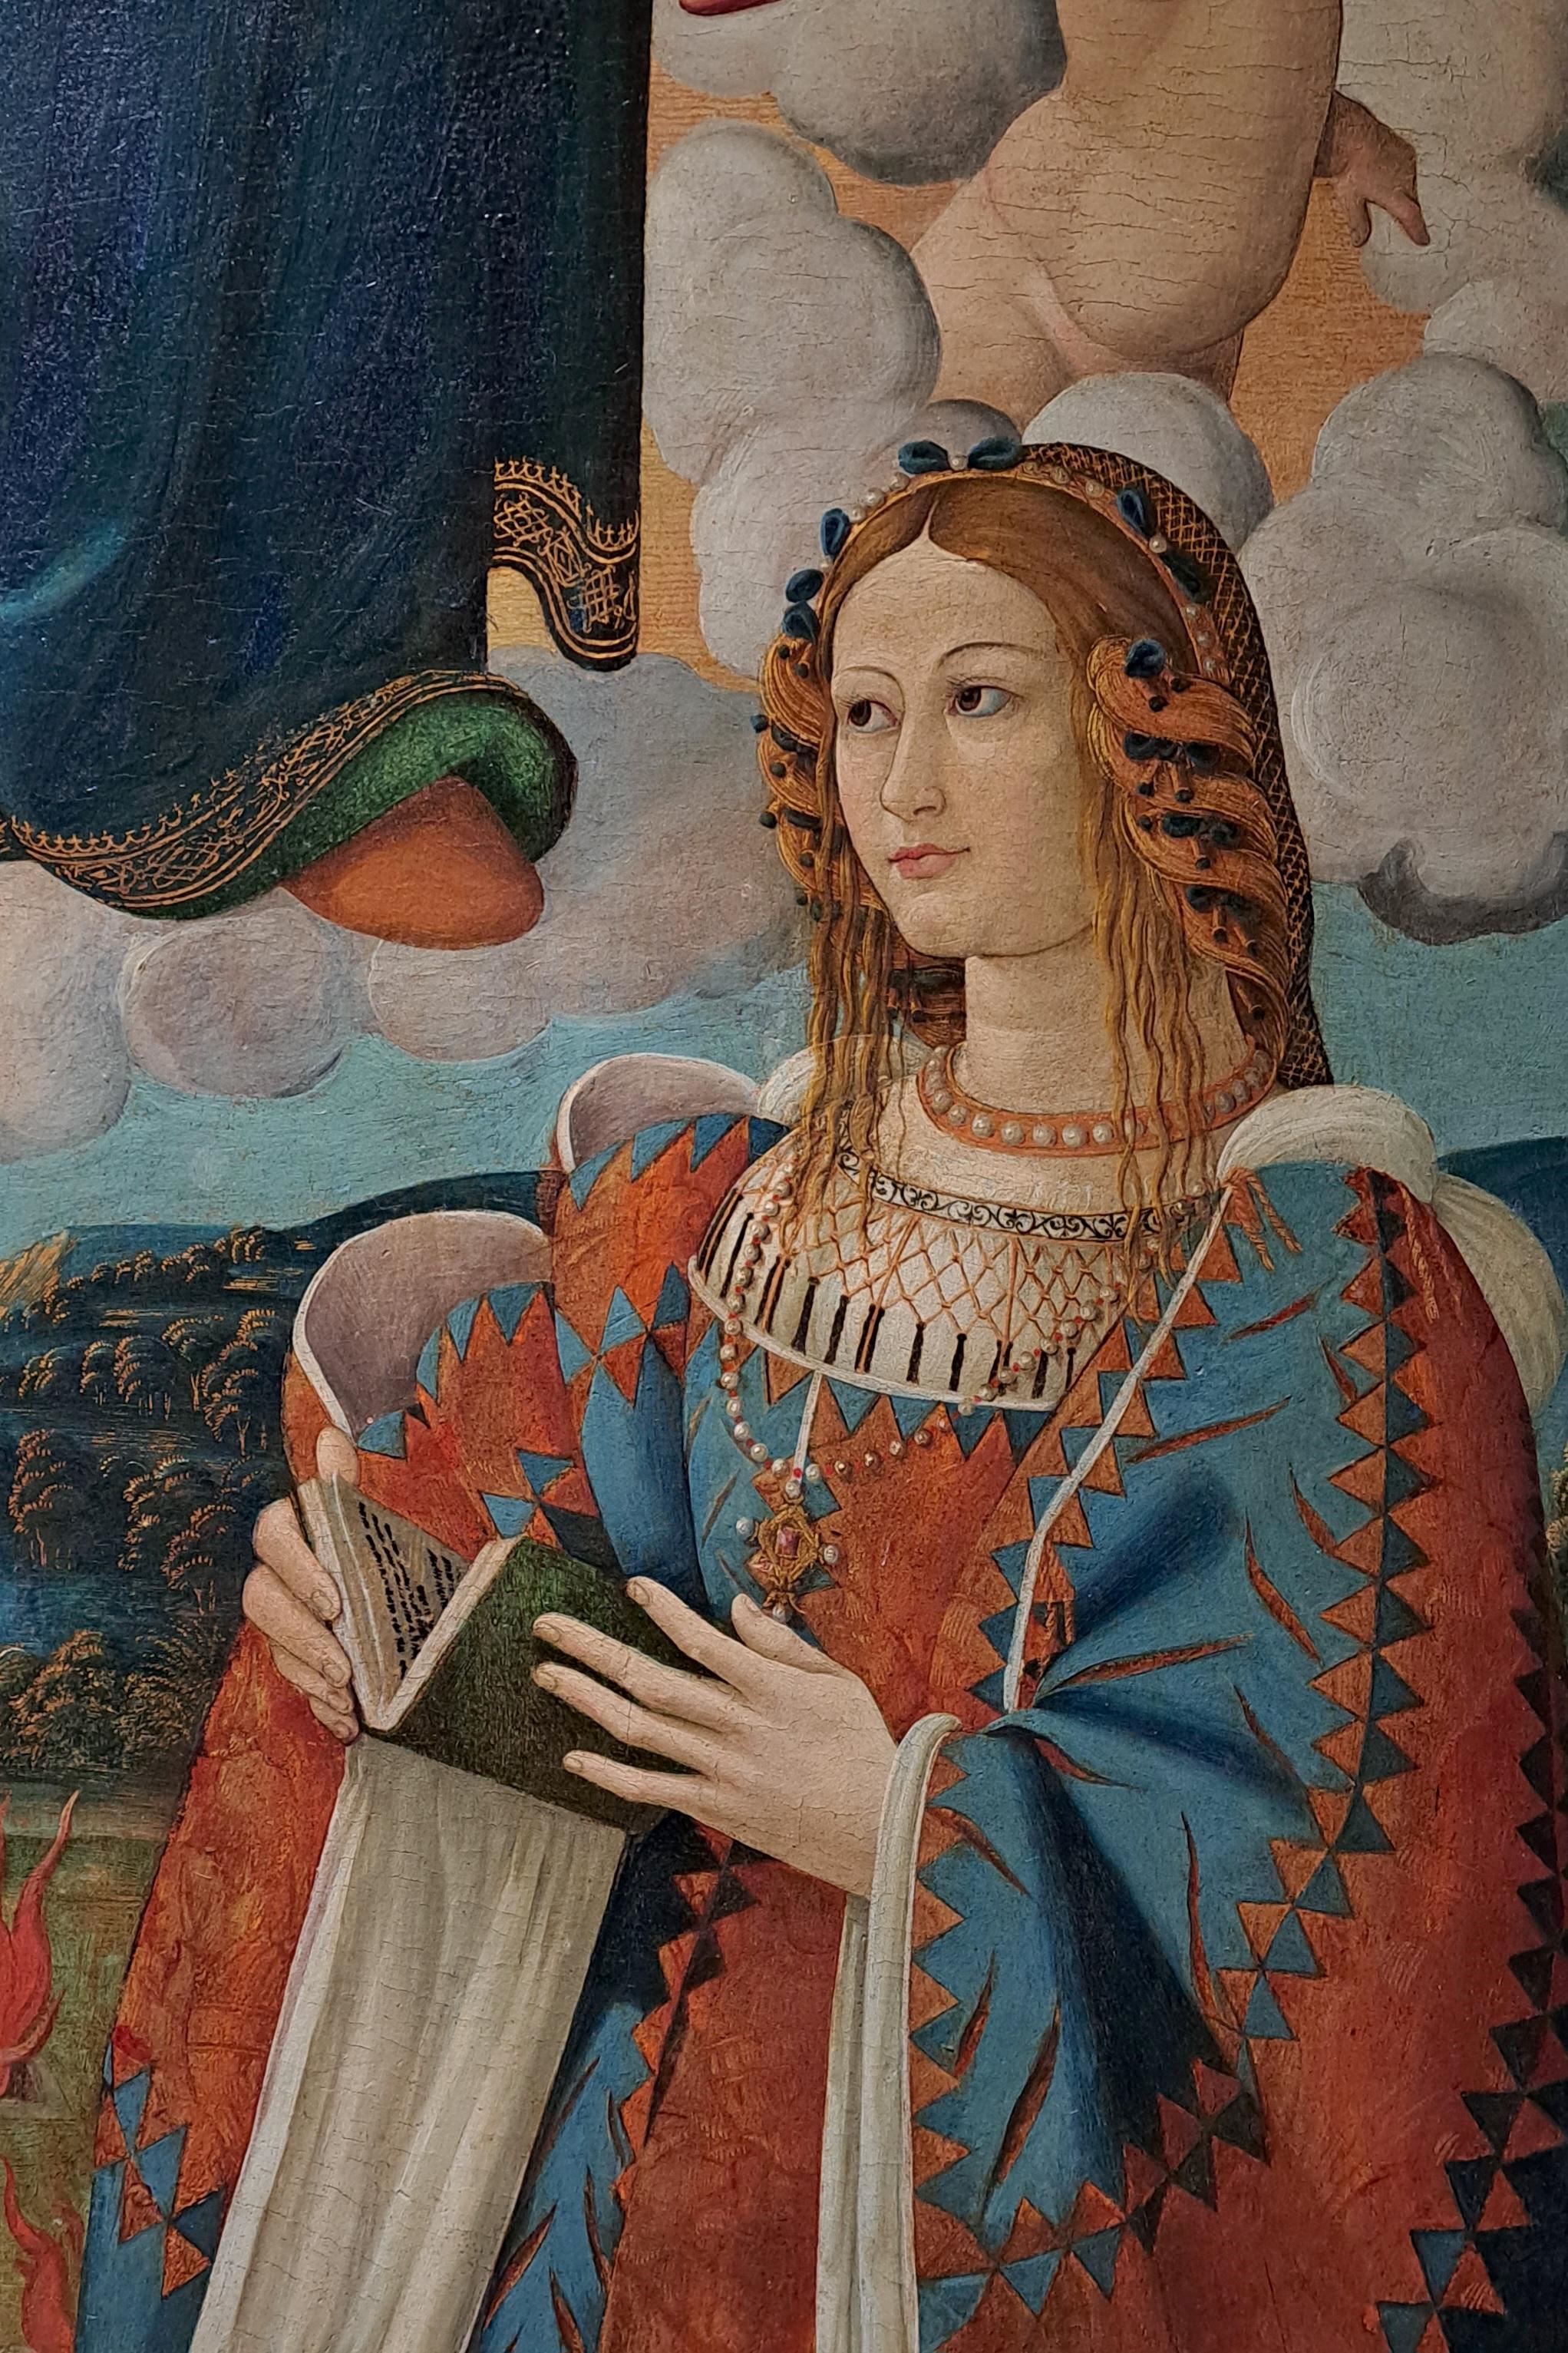 Vittoria Colonna ritratta ventenne nella “Madonna delle Grazie” di pittore anonimo, inizi XVI secolo